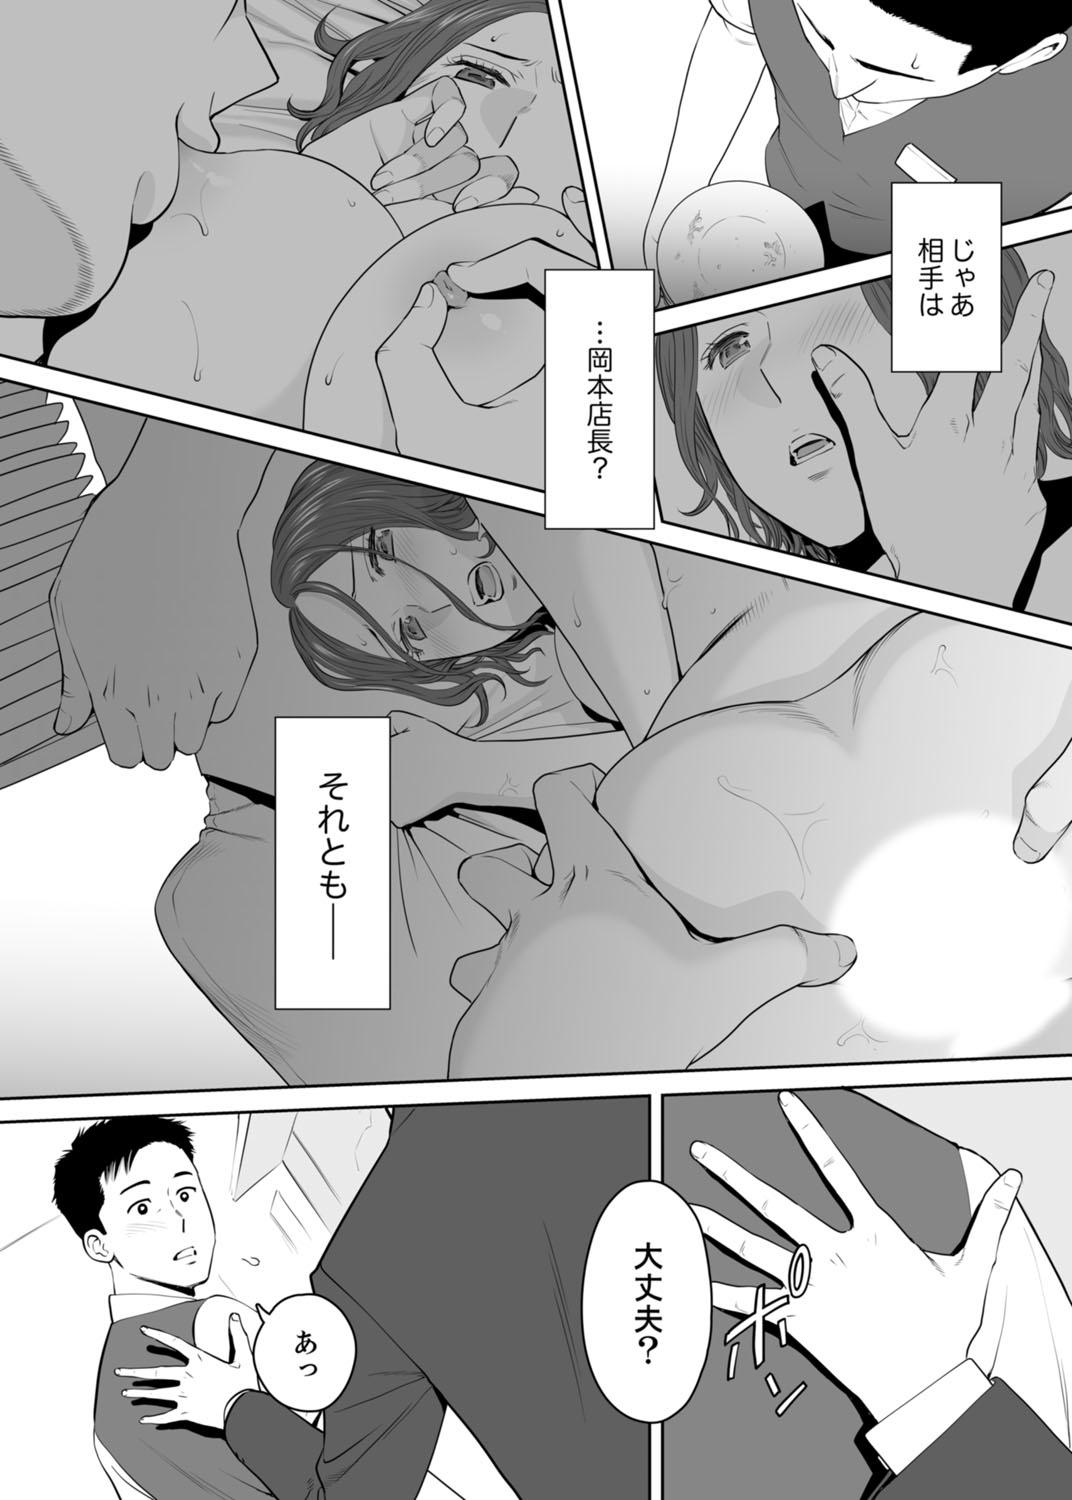 Puto "Otto no Buka ni Ikasarechau..." Aragaezu Kanjite Shimau Furinzuma 11 Plumper - Page 5